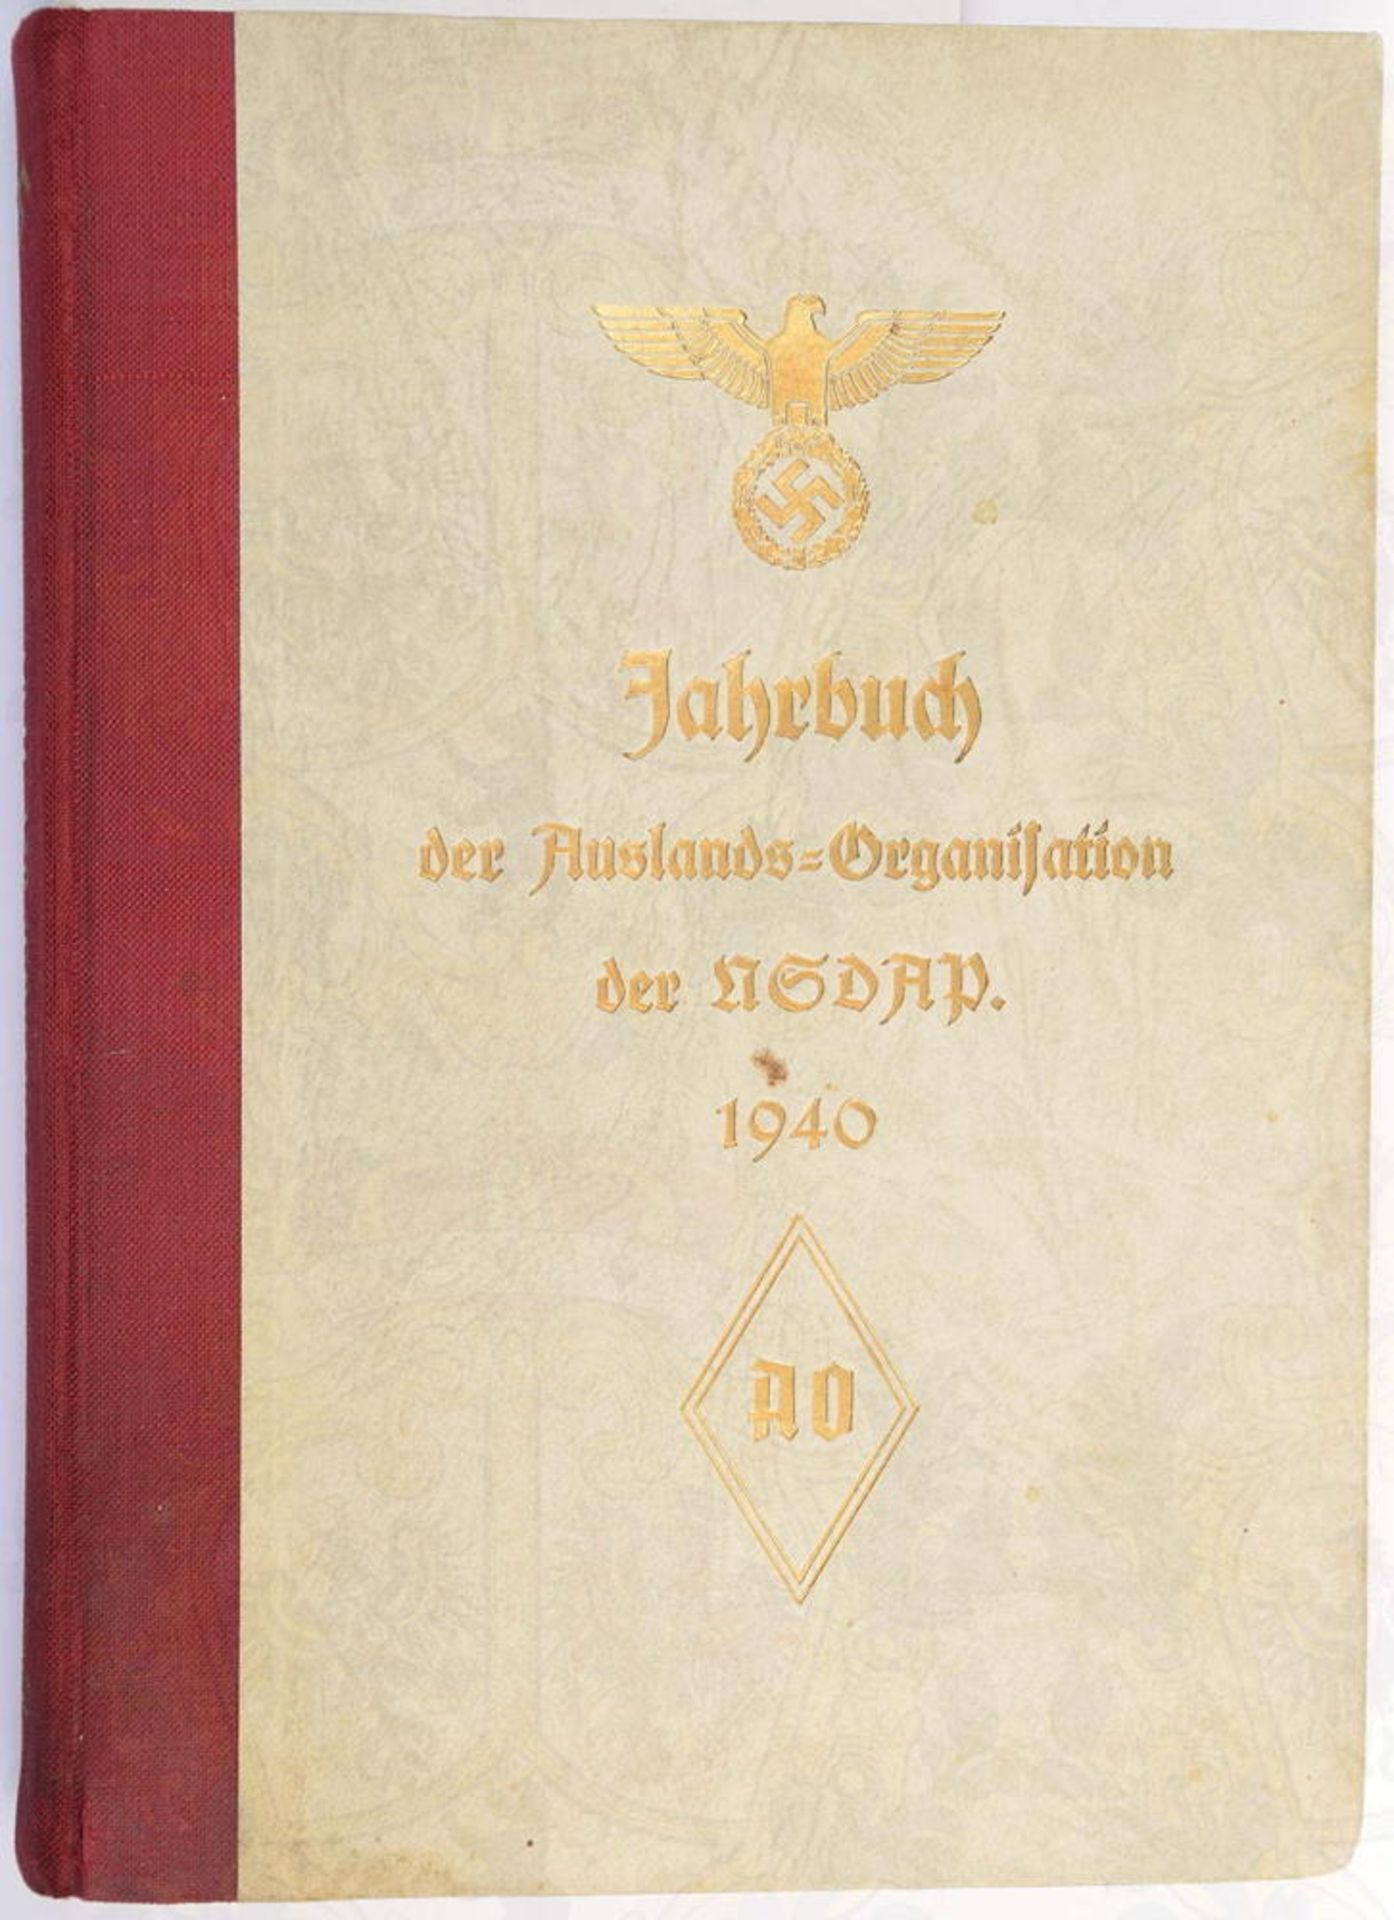 JAHRBUCH NSDAP-AO 1940, Gau-V. d. Auslands-Organisation, Fotos, 416 S., goldgepr. Hln. m. Hoheitsadl